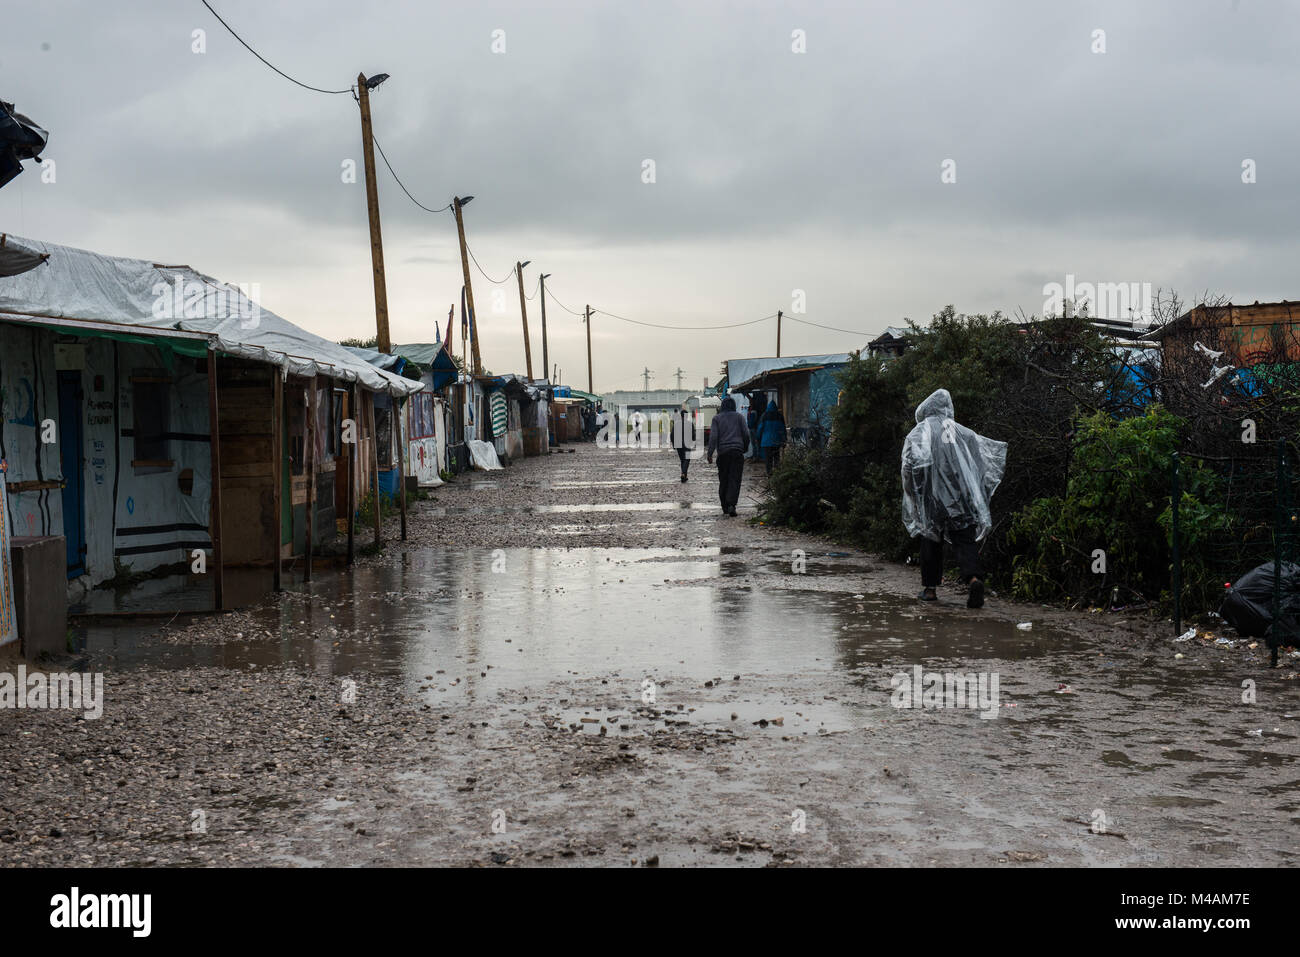 'Streets' di Calais rifugiato & inmigrant camp cosiddetta giungla dopo due giorni di pioggia intensa. Piscine di fango e sono in tutto il luogo. Foto Stock